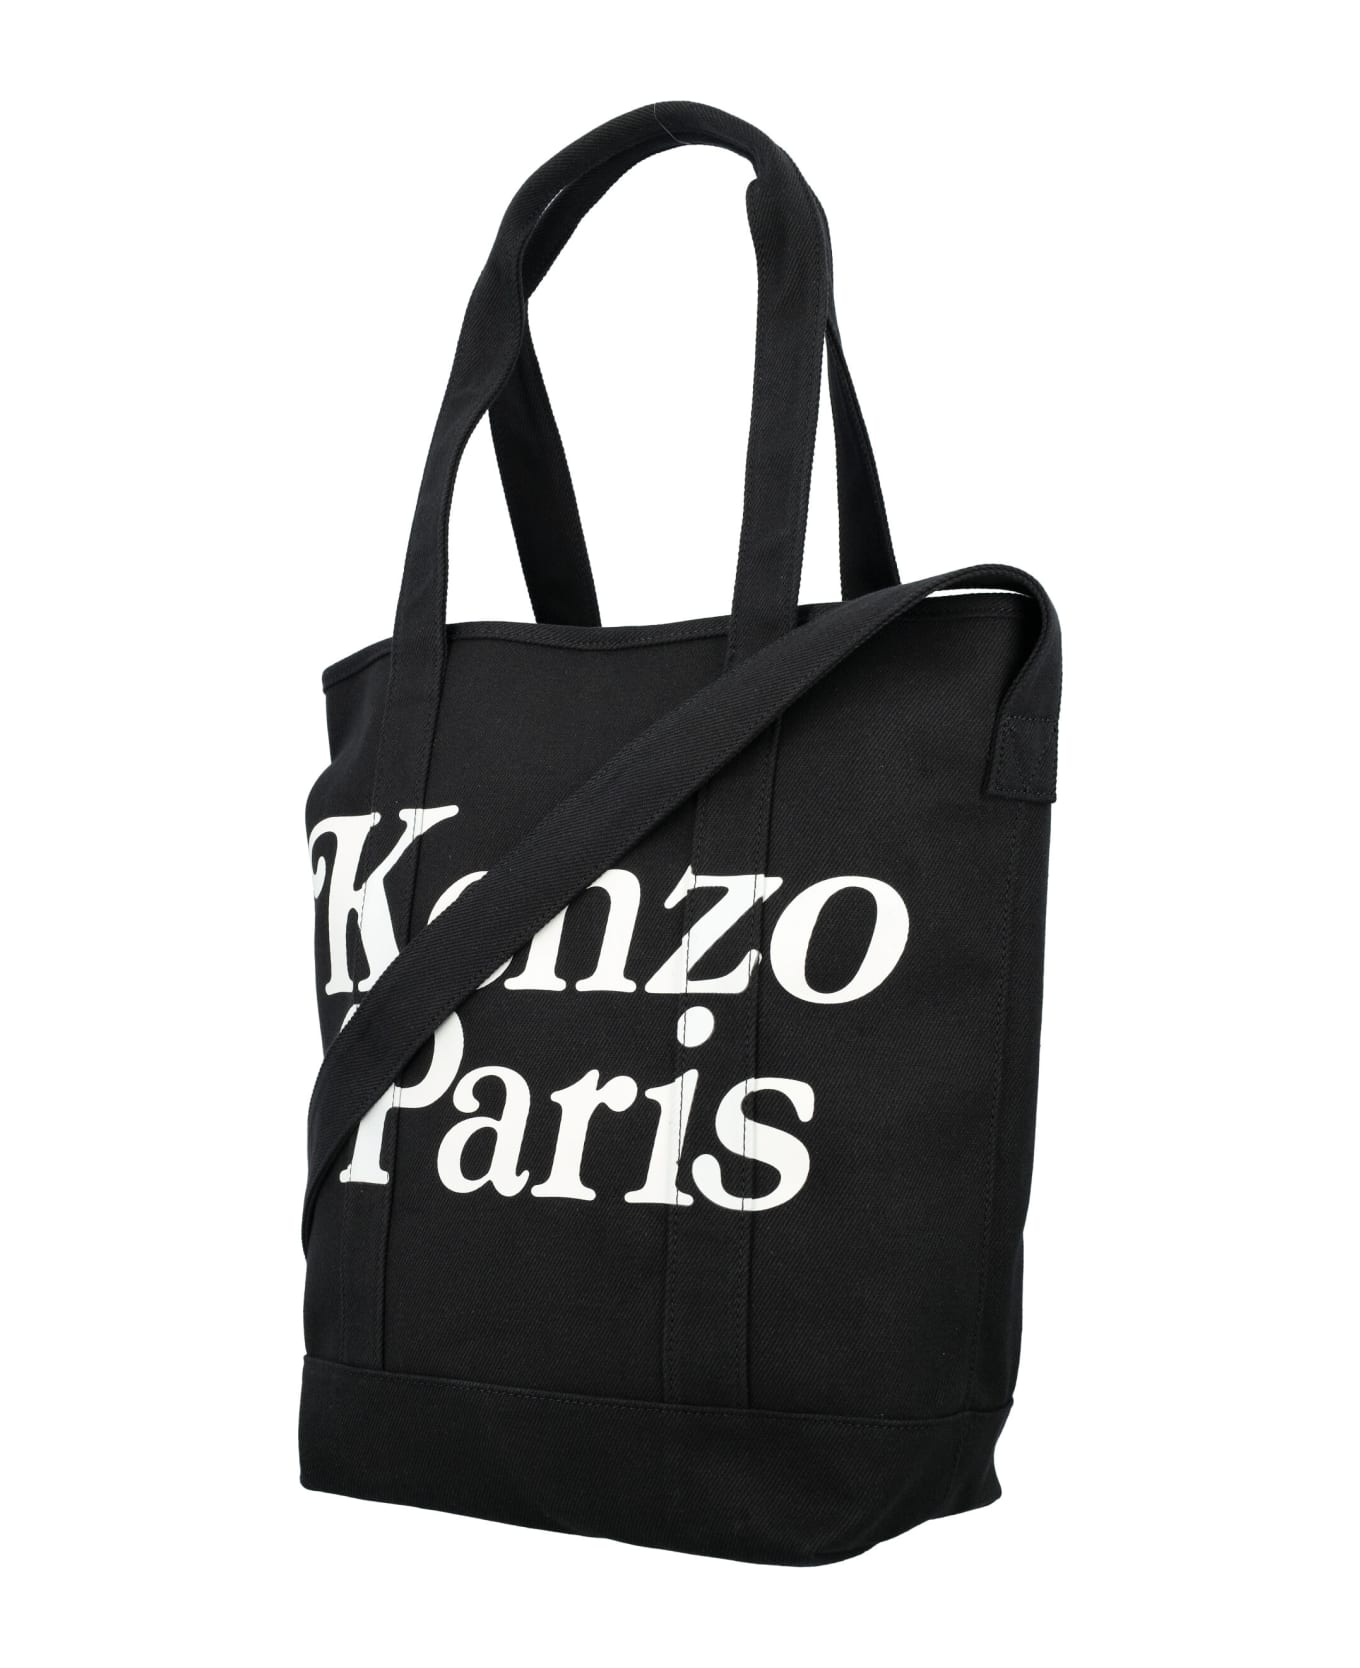 Kenzo Paris Tote Bag - BLACK